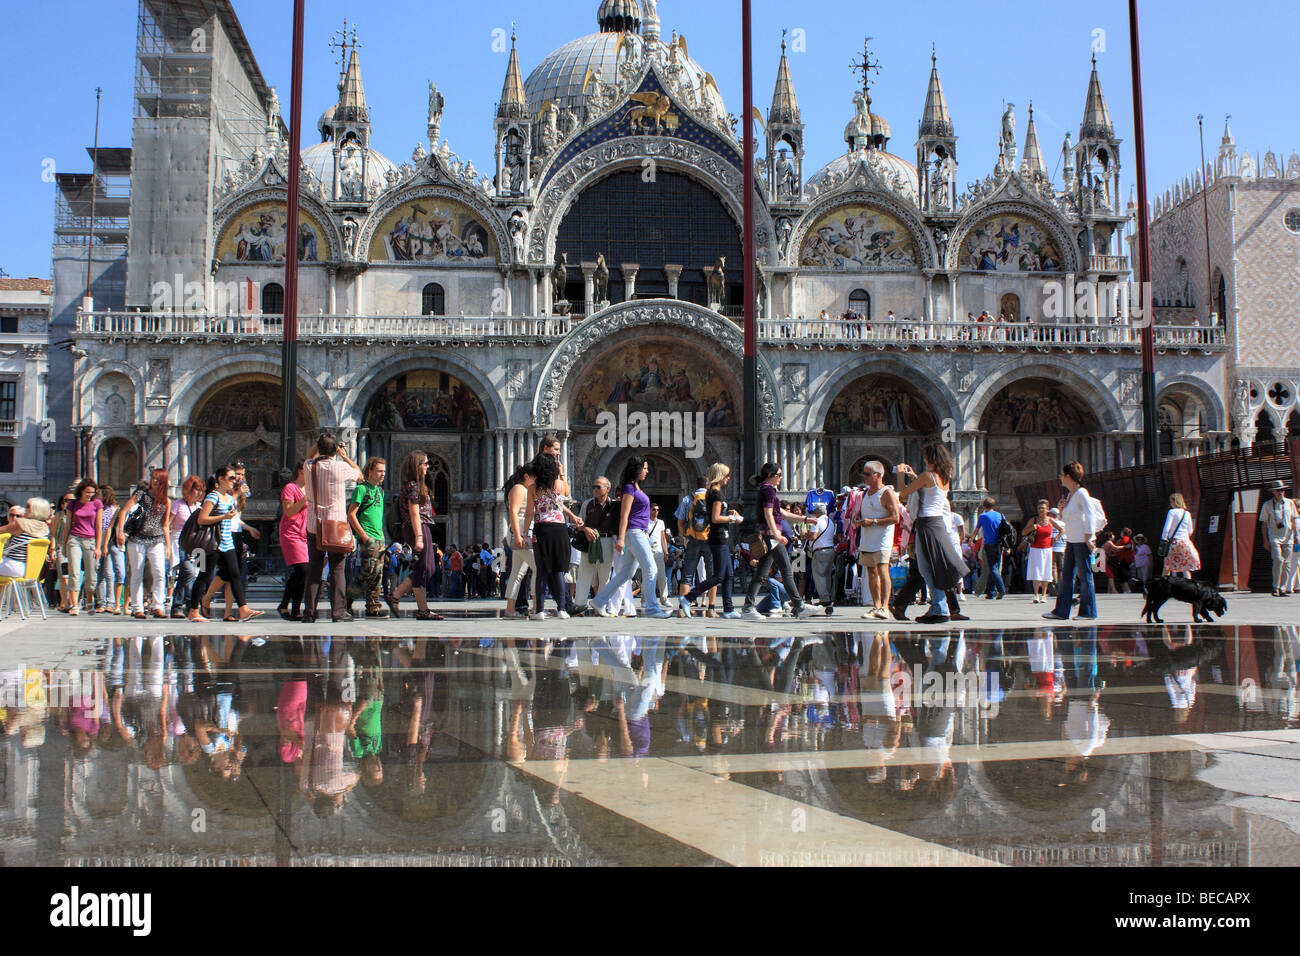 Acqua alta in piazza San Marco, Venezia, Italia Foto Stock